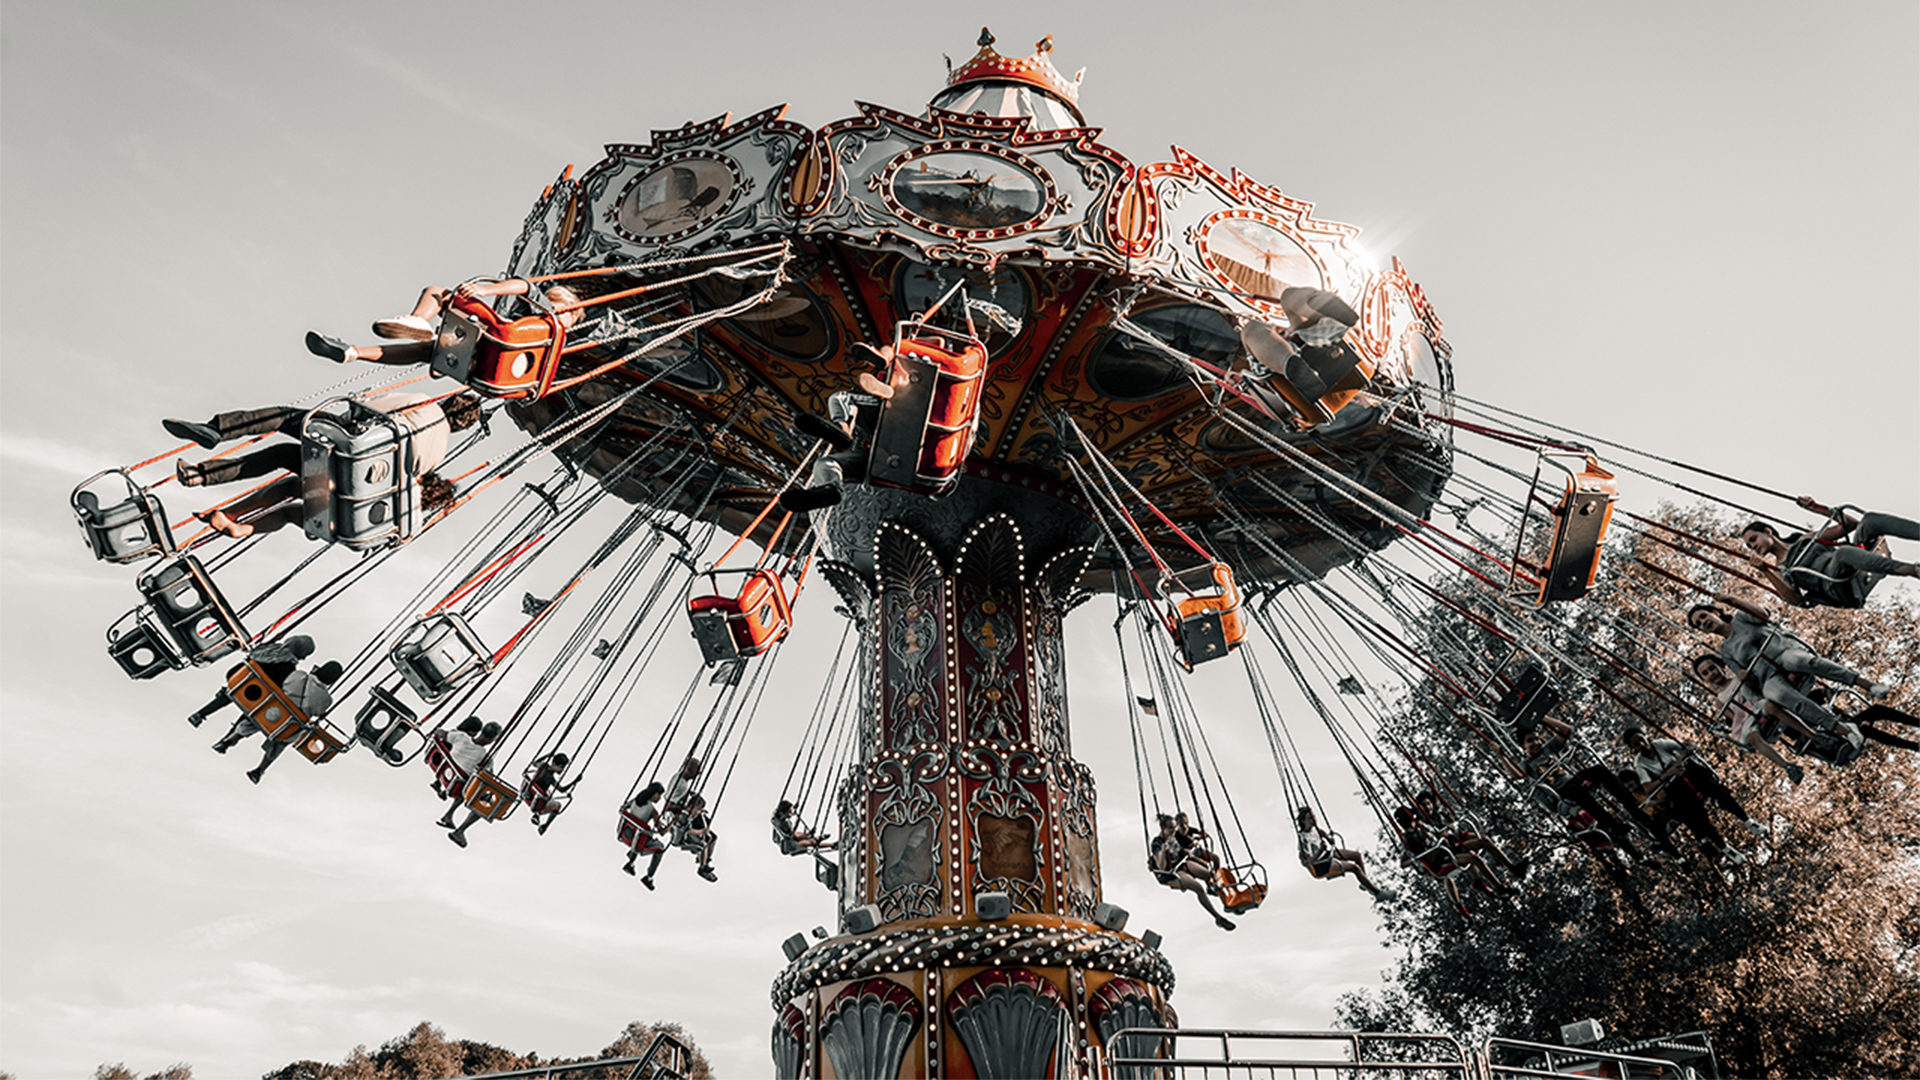 Victorian style fairground carousel